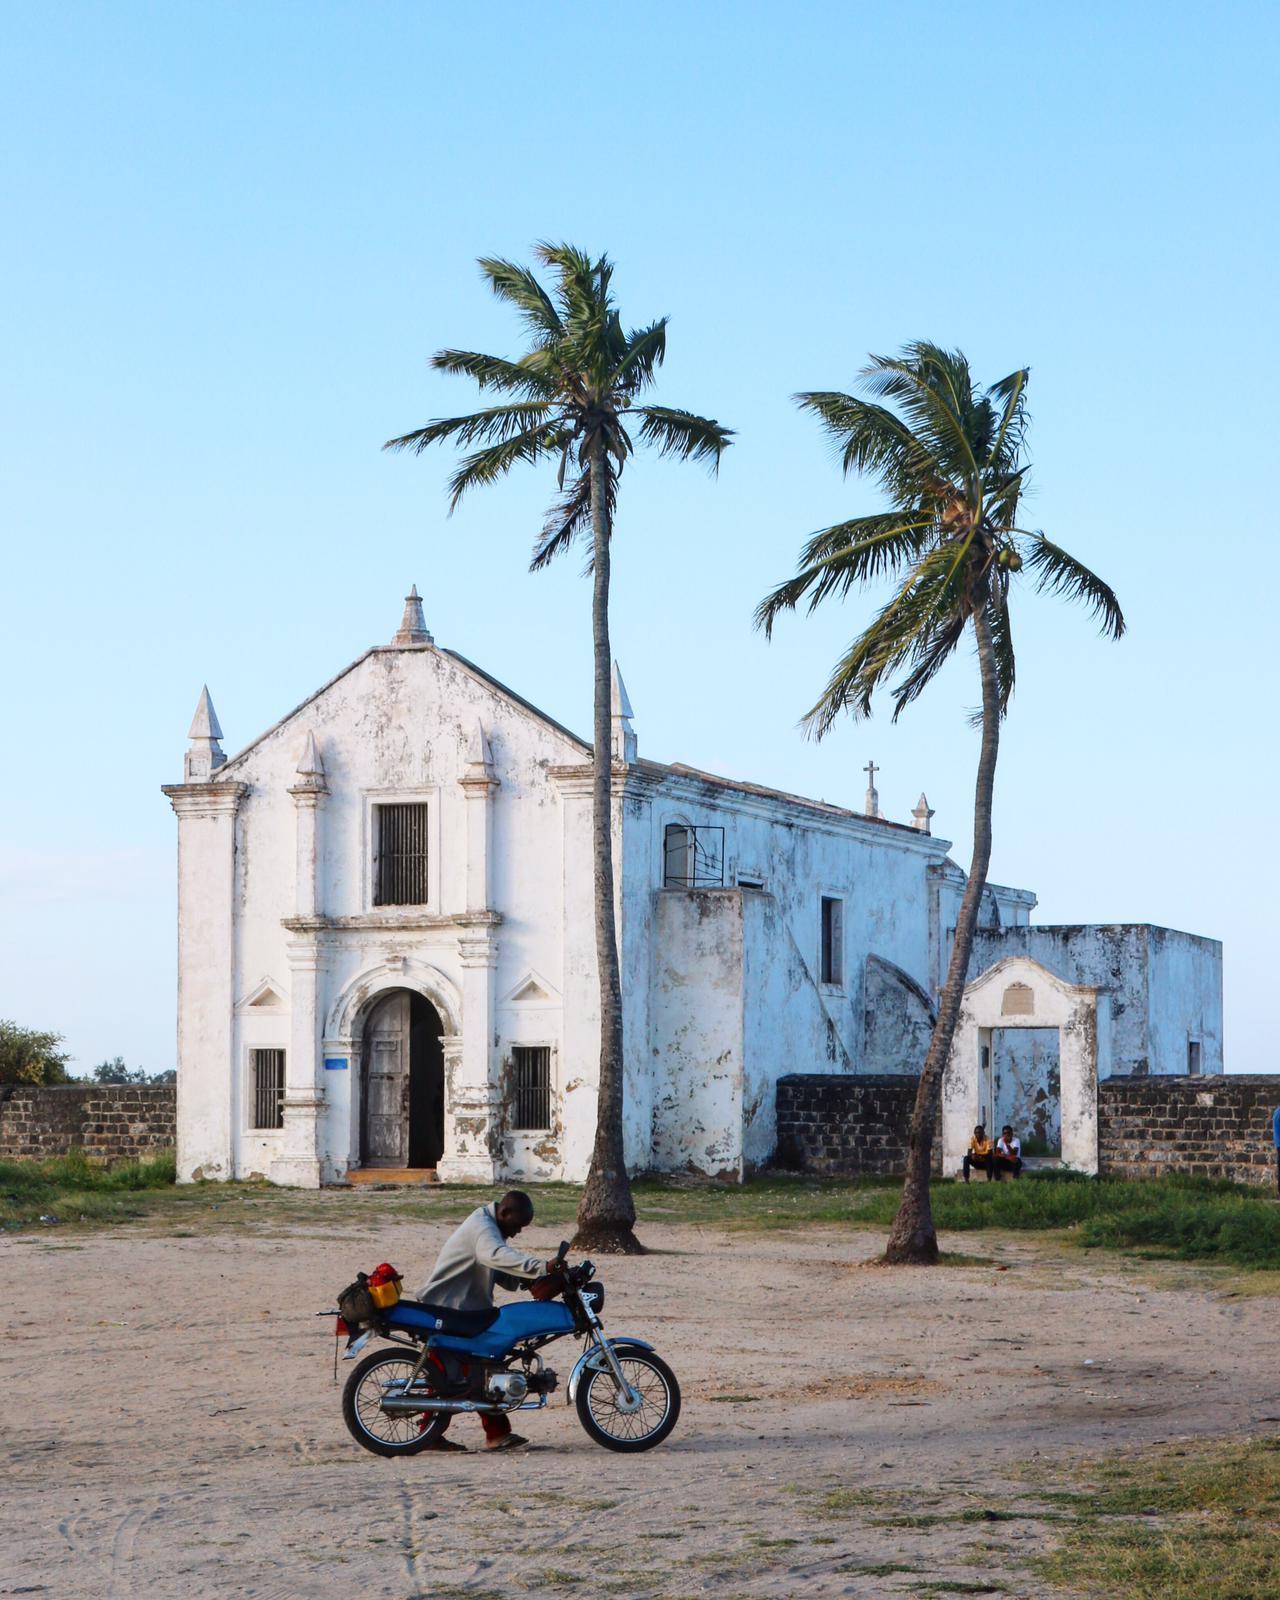 Ilha de Mozambique : Un voyage dans l'histoire et la beauté déchue